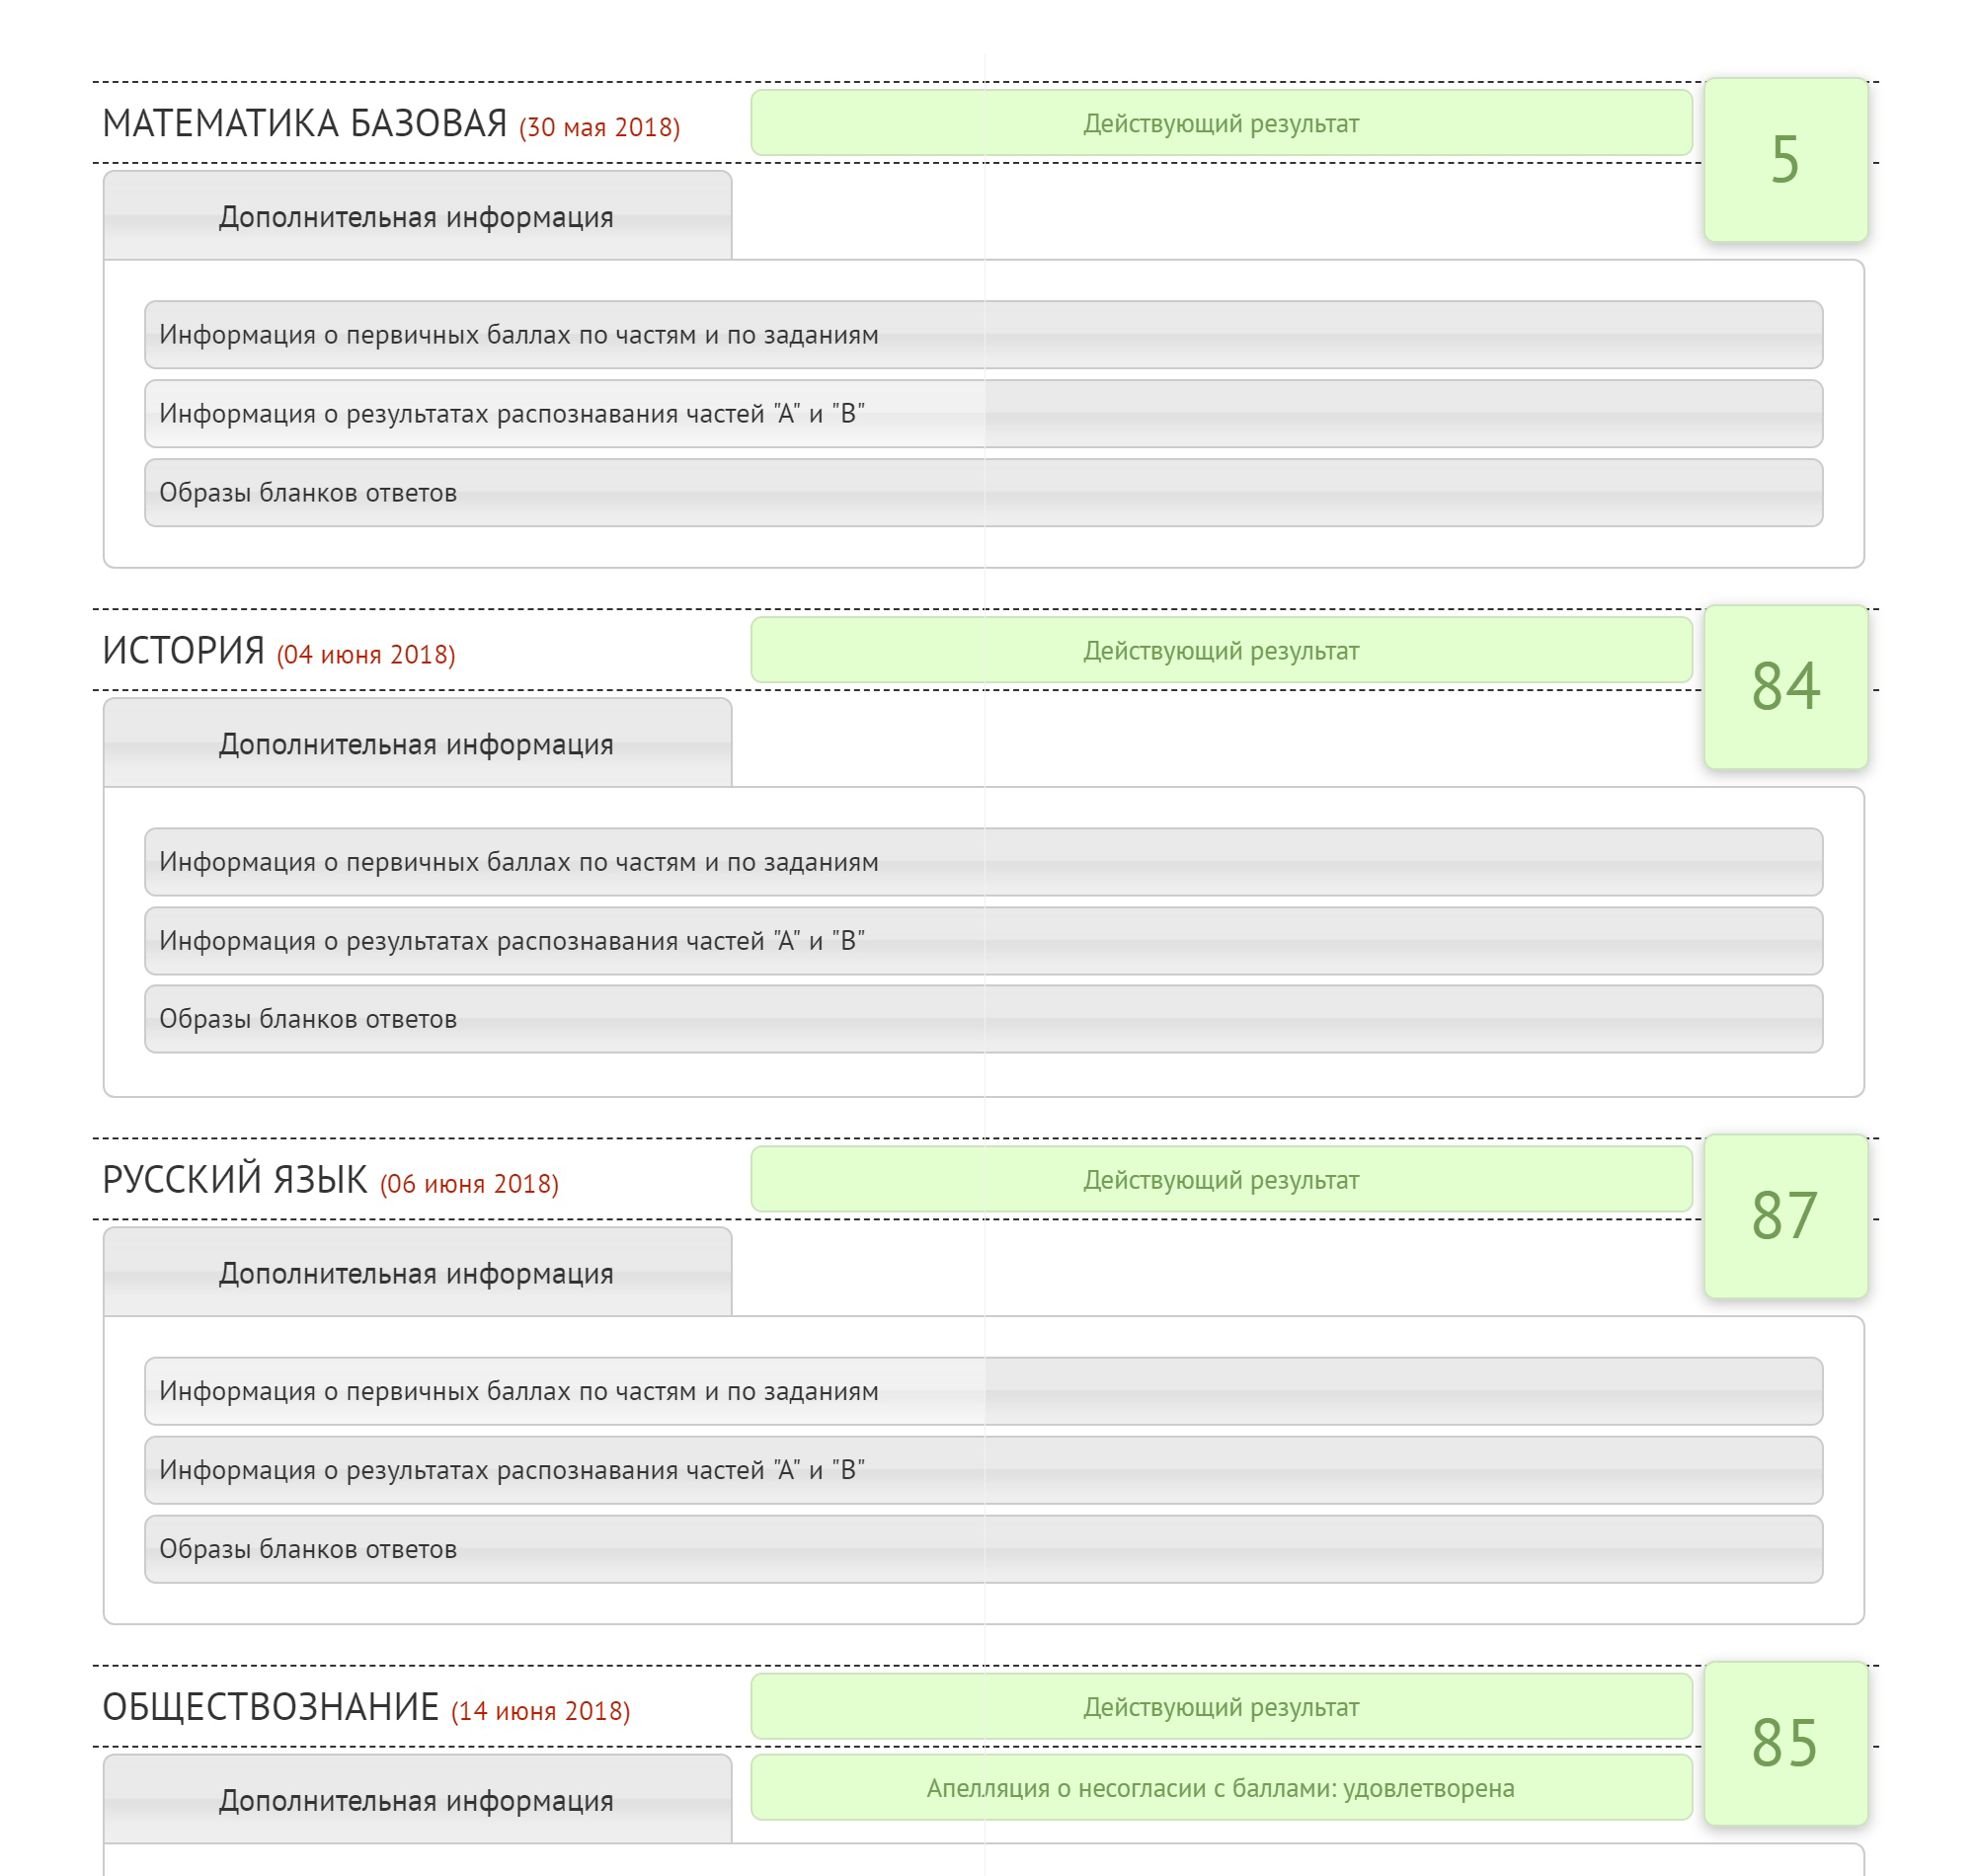 Мои результаты ЕГЭ после апелляции на сайте ege.spb.ru. В закладках — сканы экзаменационных бланков, компьютерные результаты распознавания и оценки каждой части экзамена